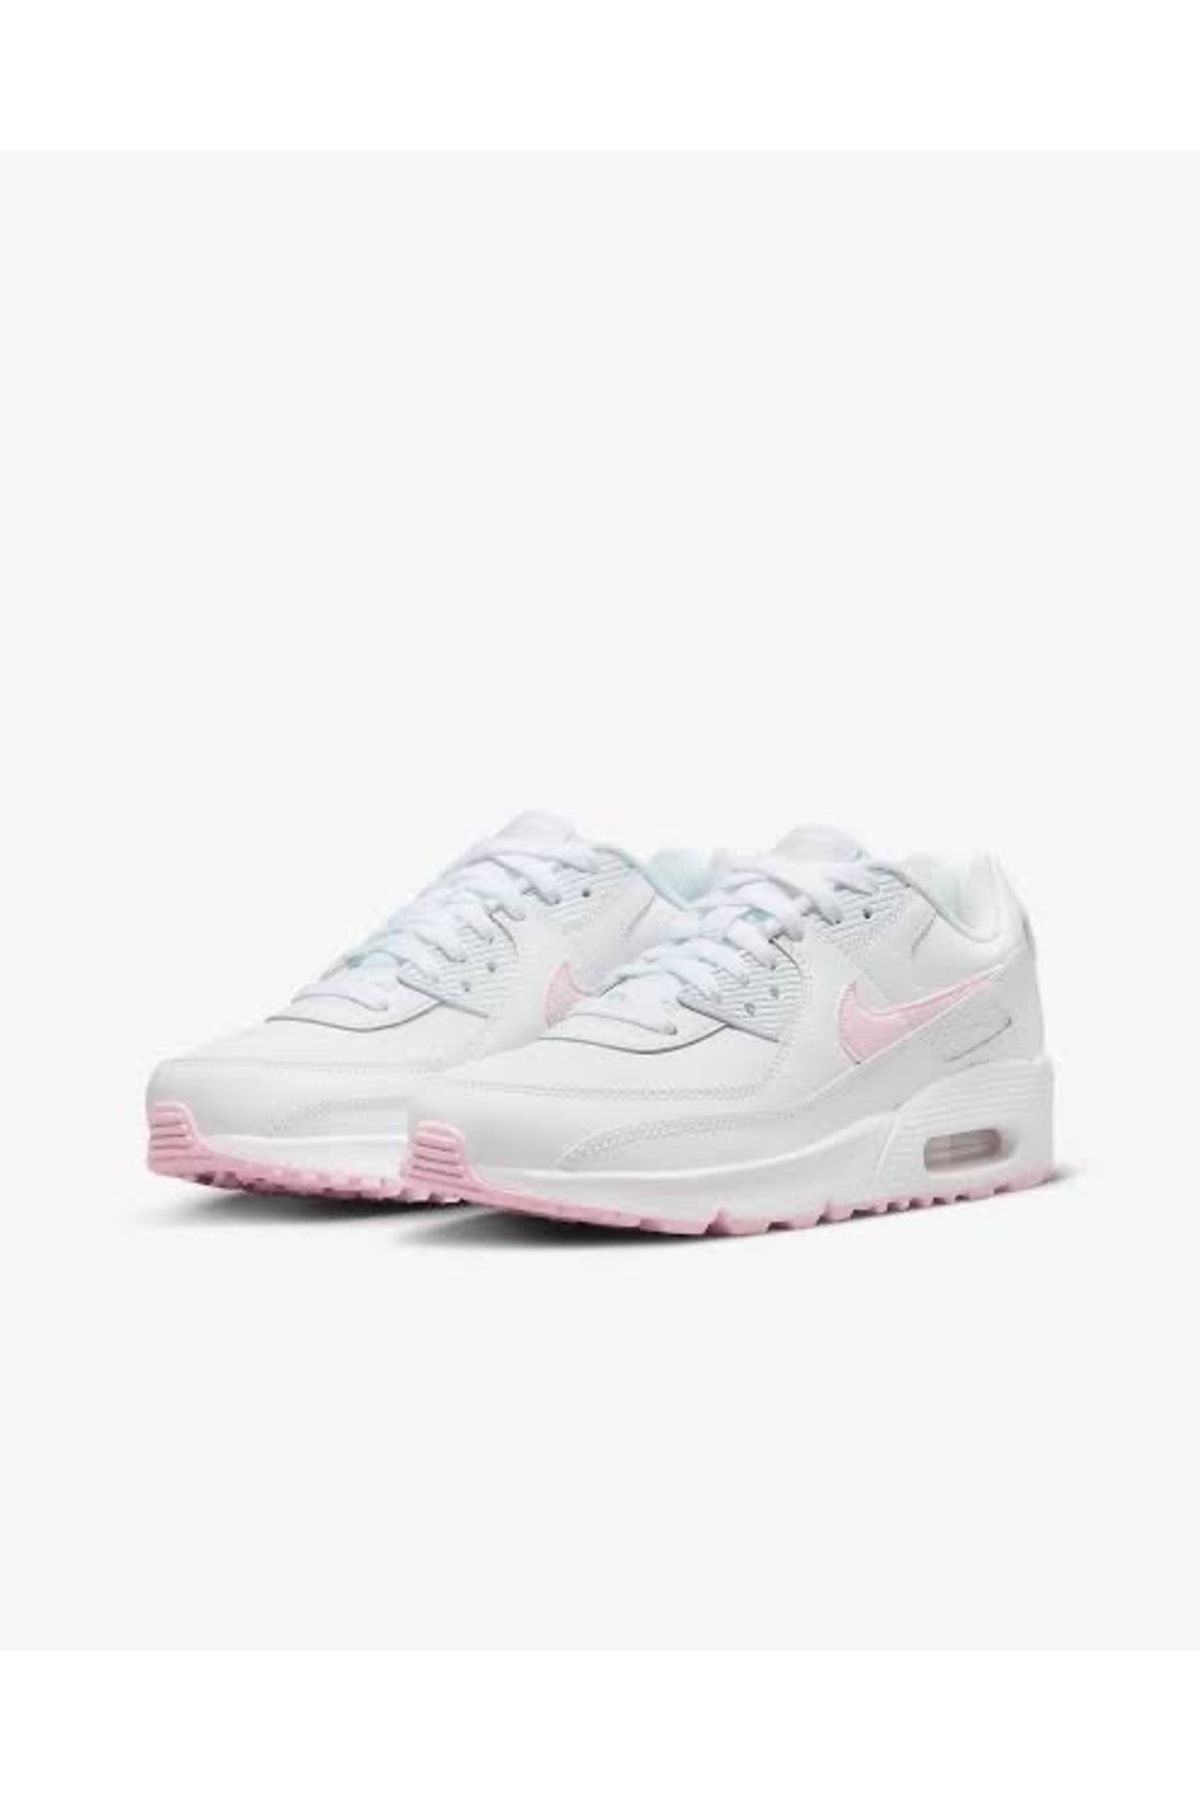 Nike Air Max 90 LTR White Pink Foam (GS)